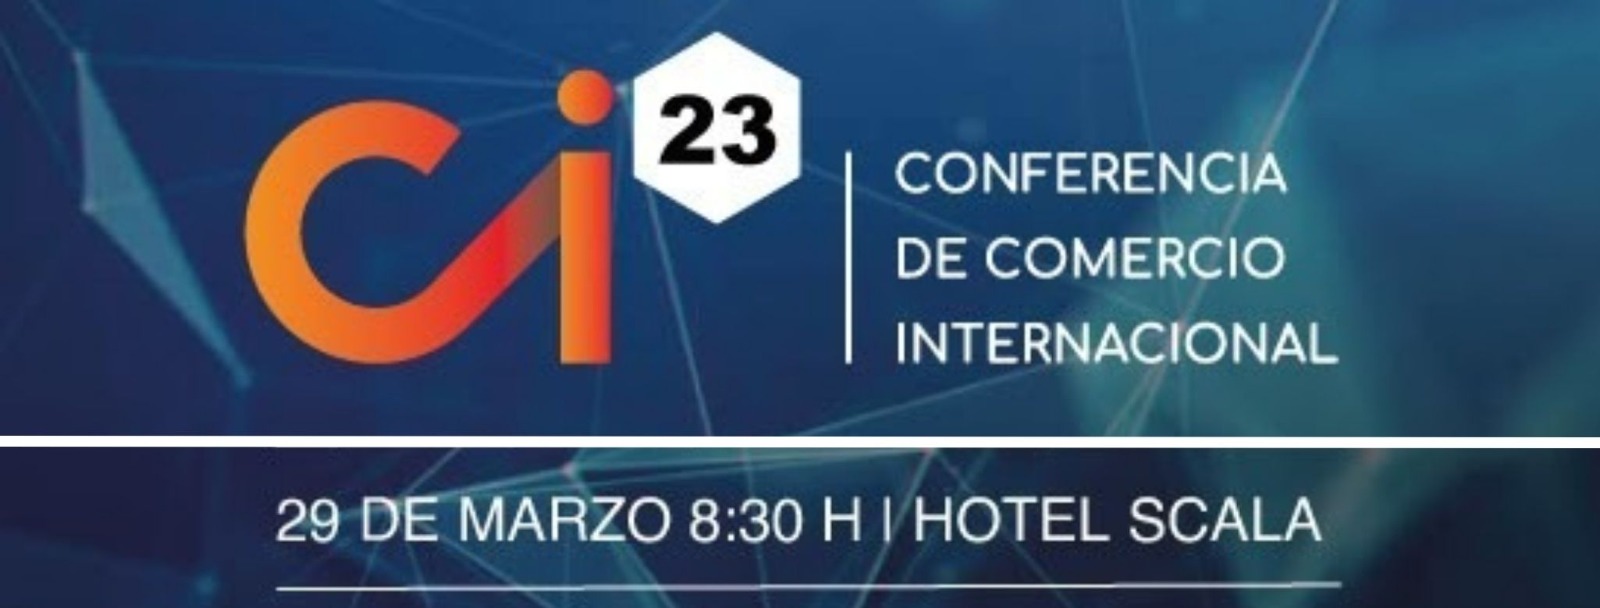 Invitación CAC - Conferencia de Comercio Internacional